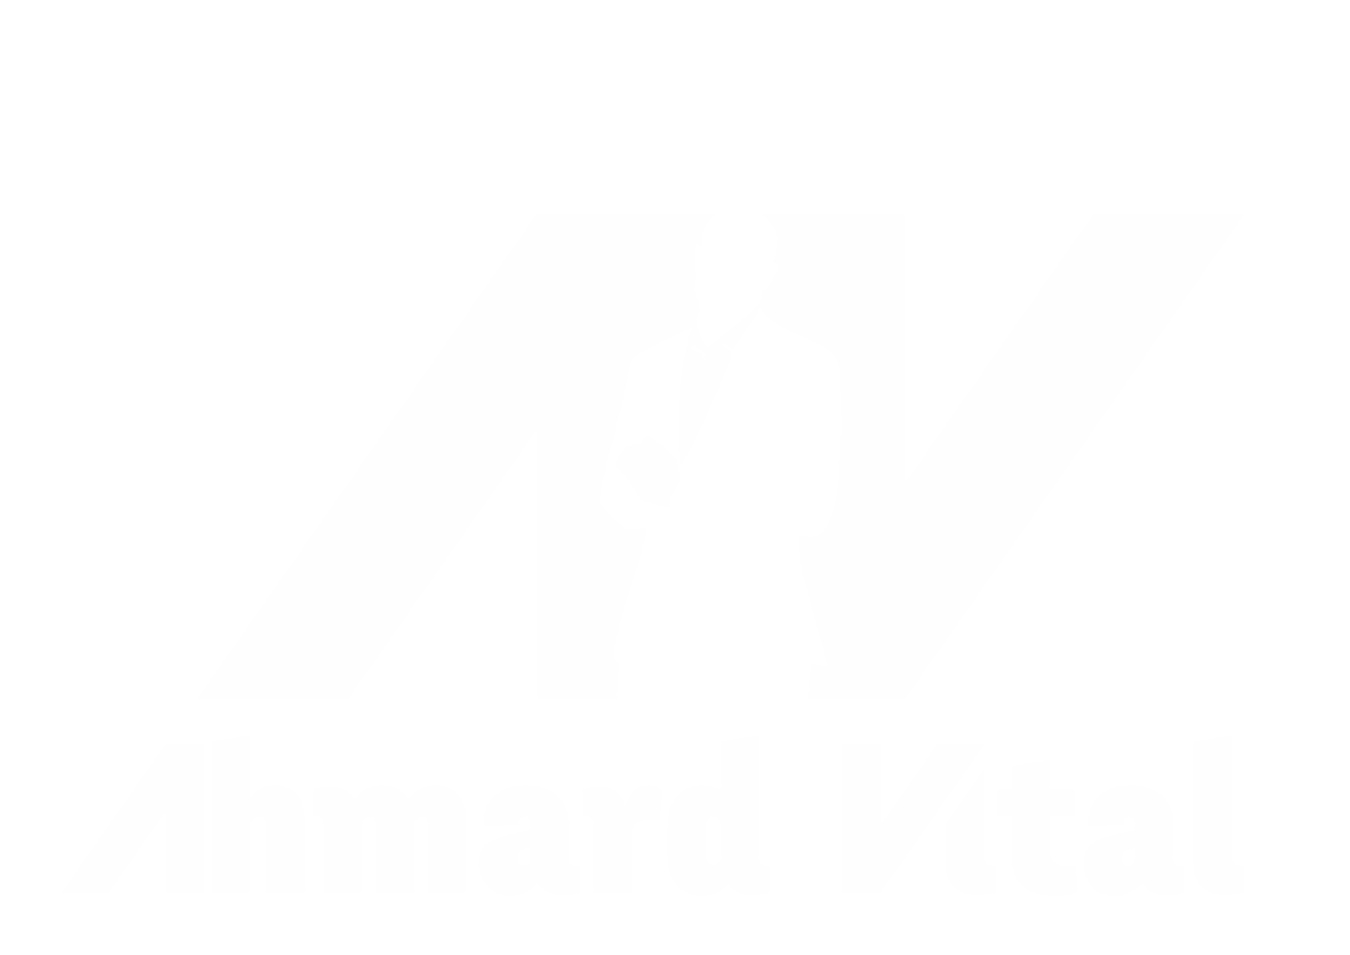 Ahmard Vital